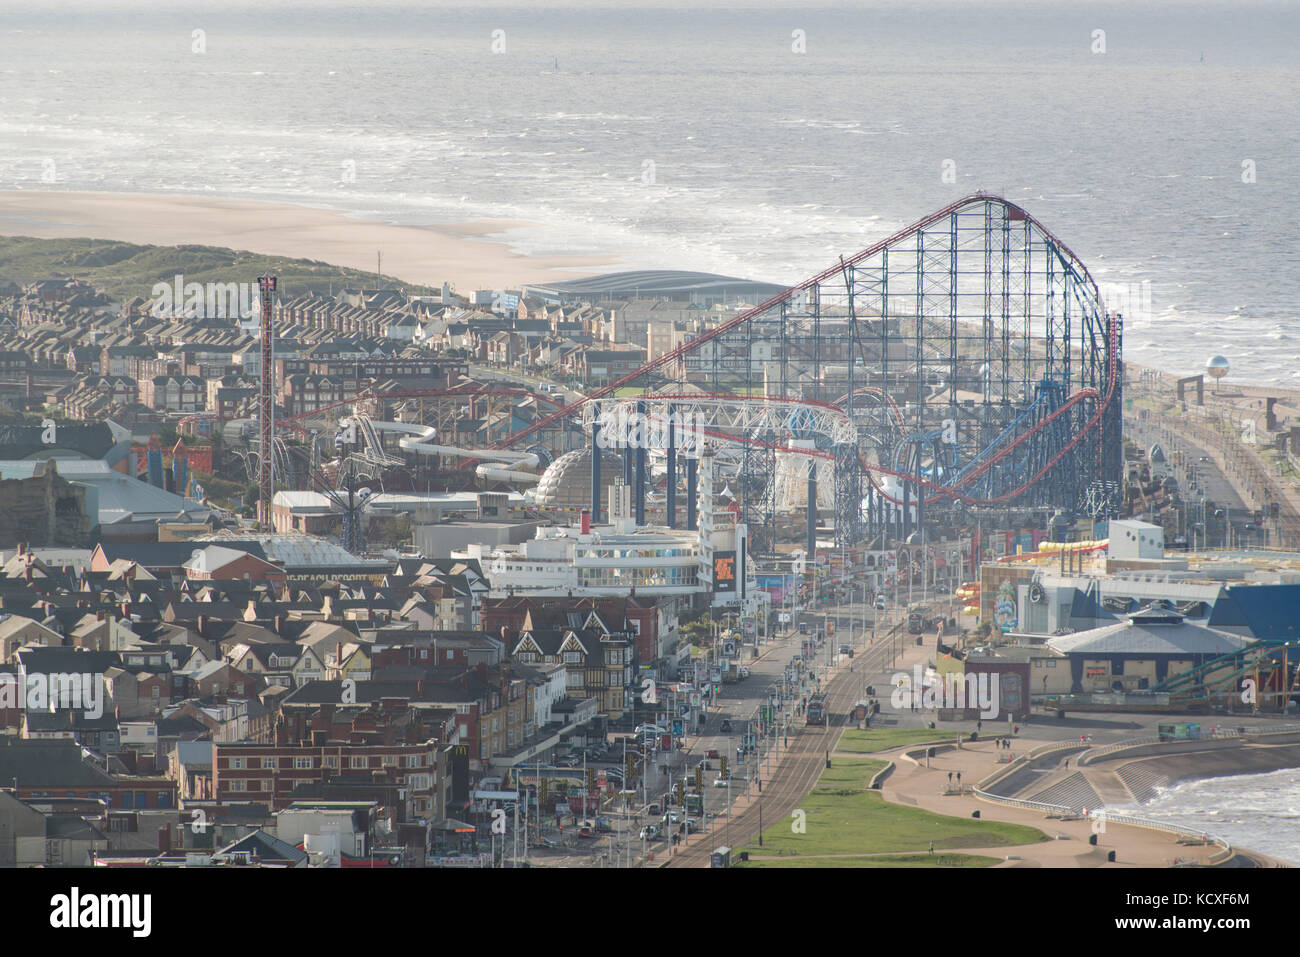 Bild von Blackpool Pleasure Beach an einem sonnigen Sommern Nachmittag. Credit lee Ramsden/alamy Stockfoto